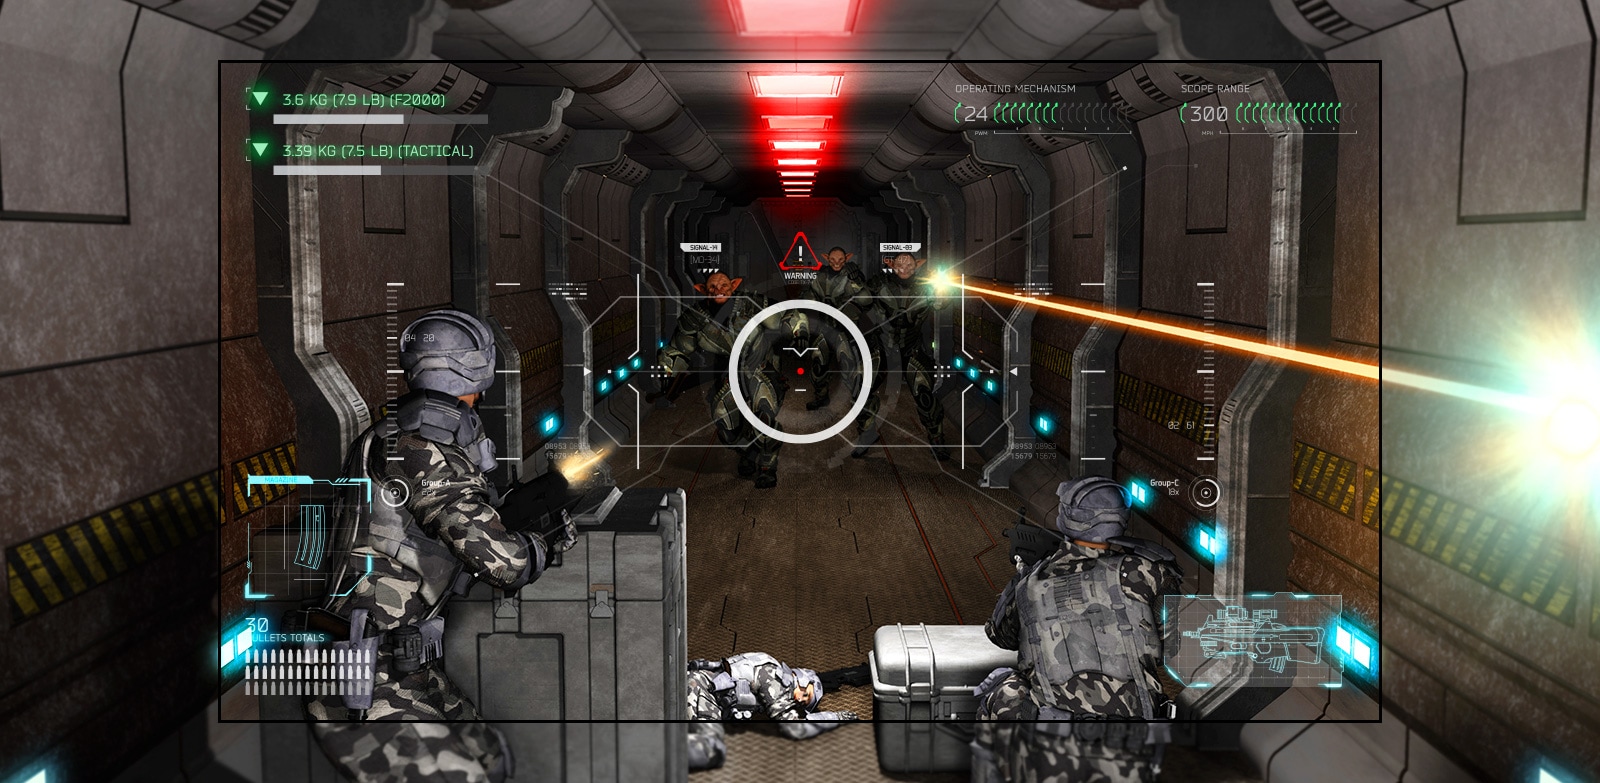 Una scena sullo schermo TV di un gioco di tiro in cui il giocatore affronta la superiorità delle creature dello spazio armato.